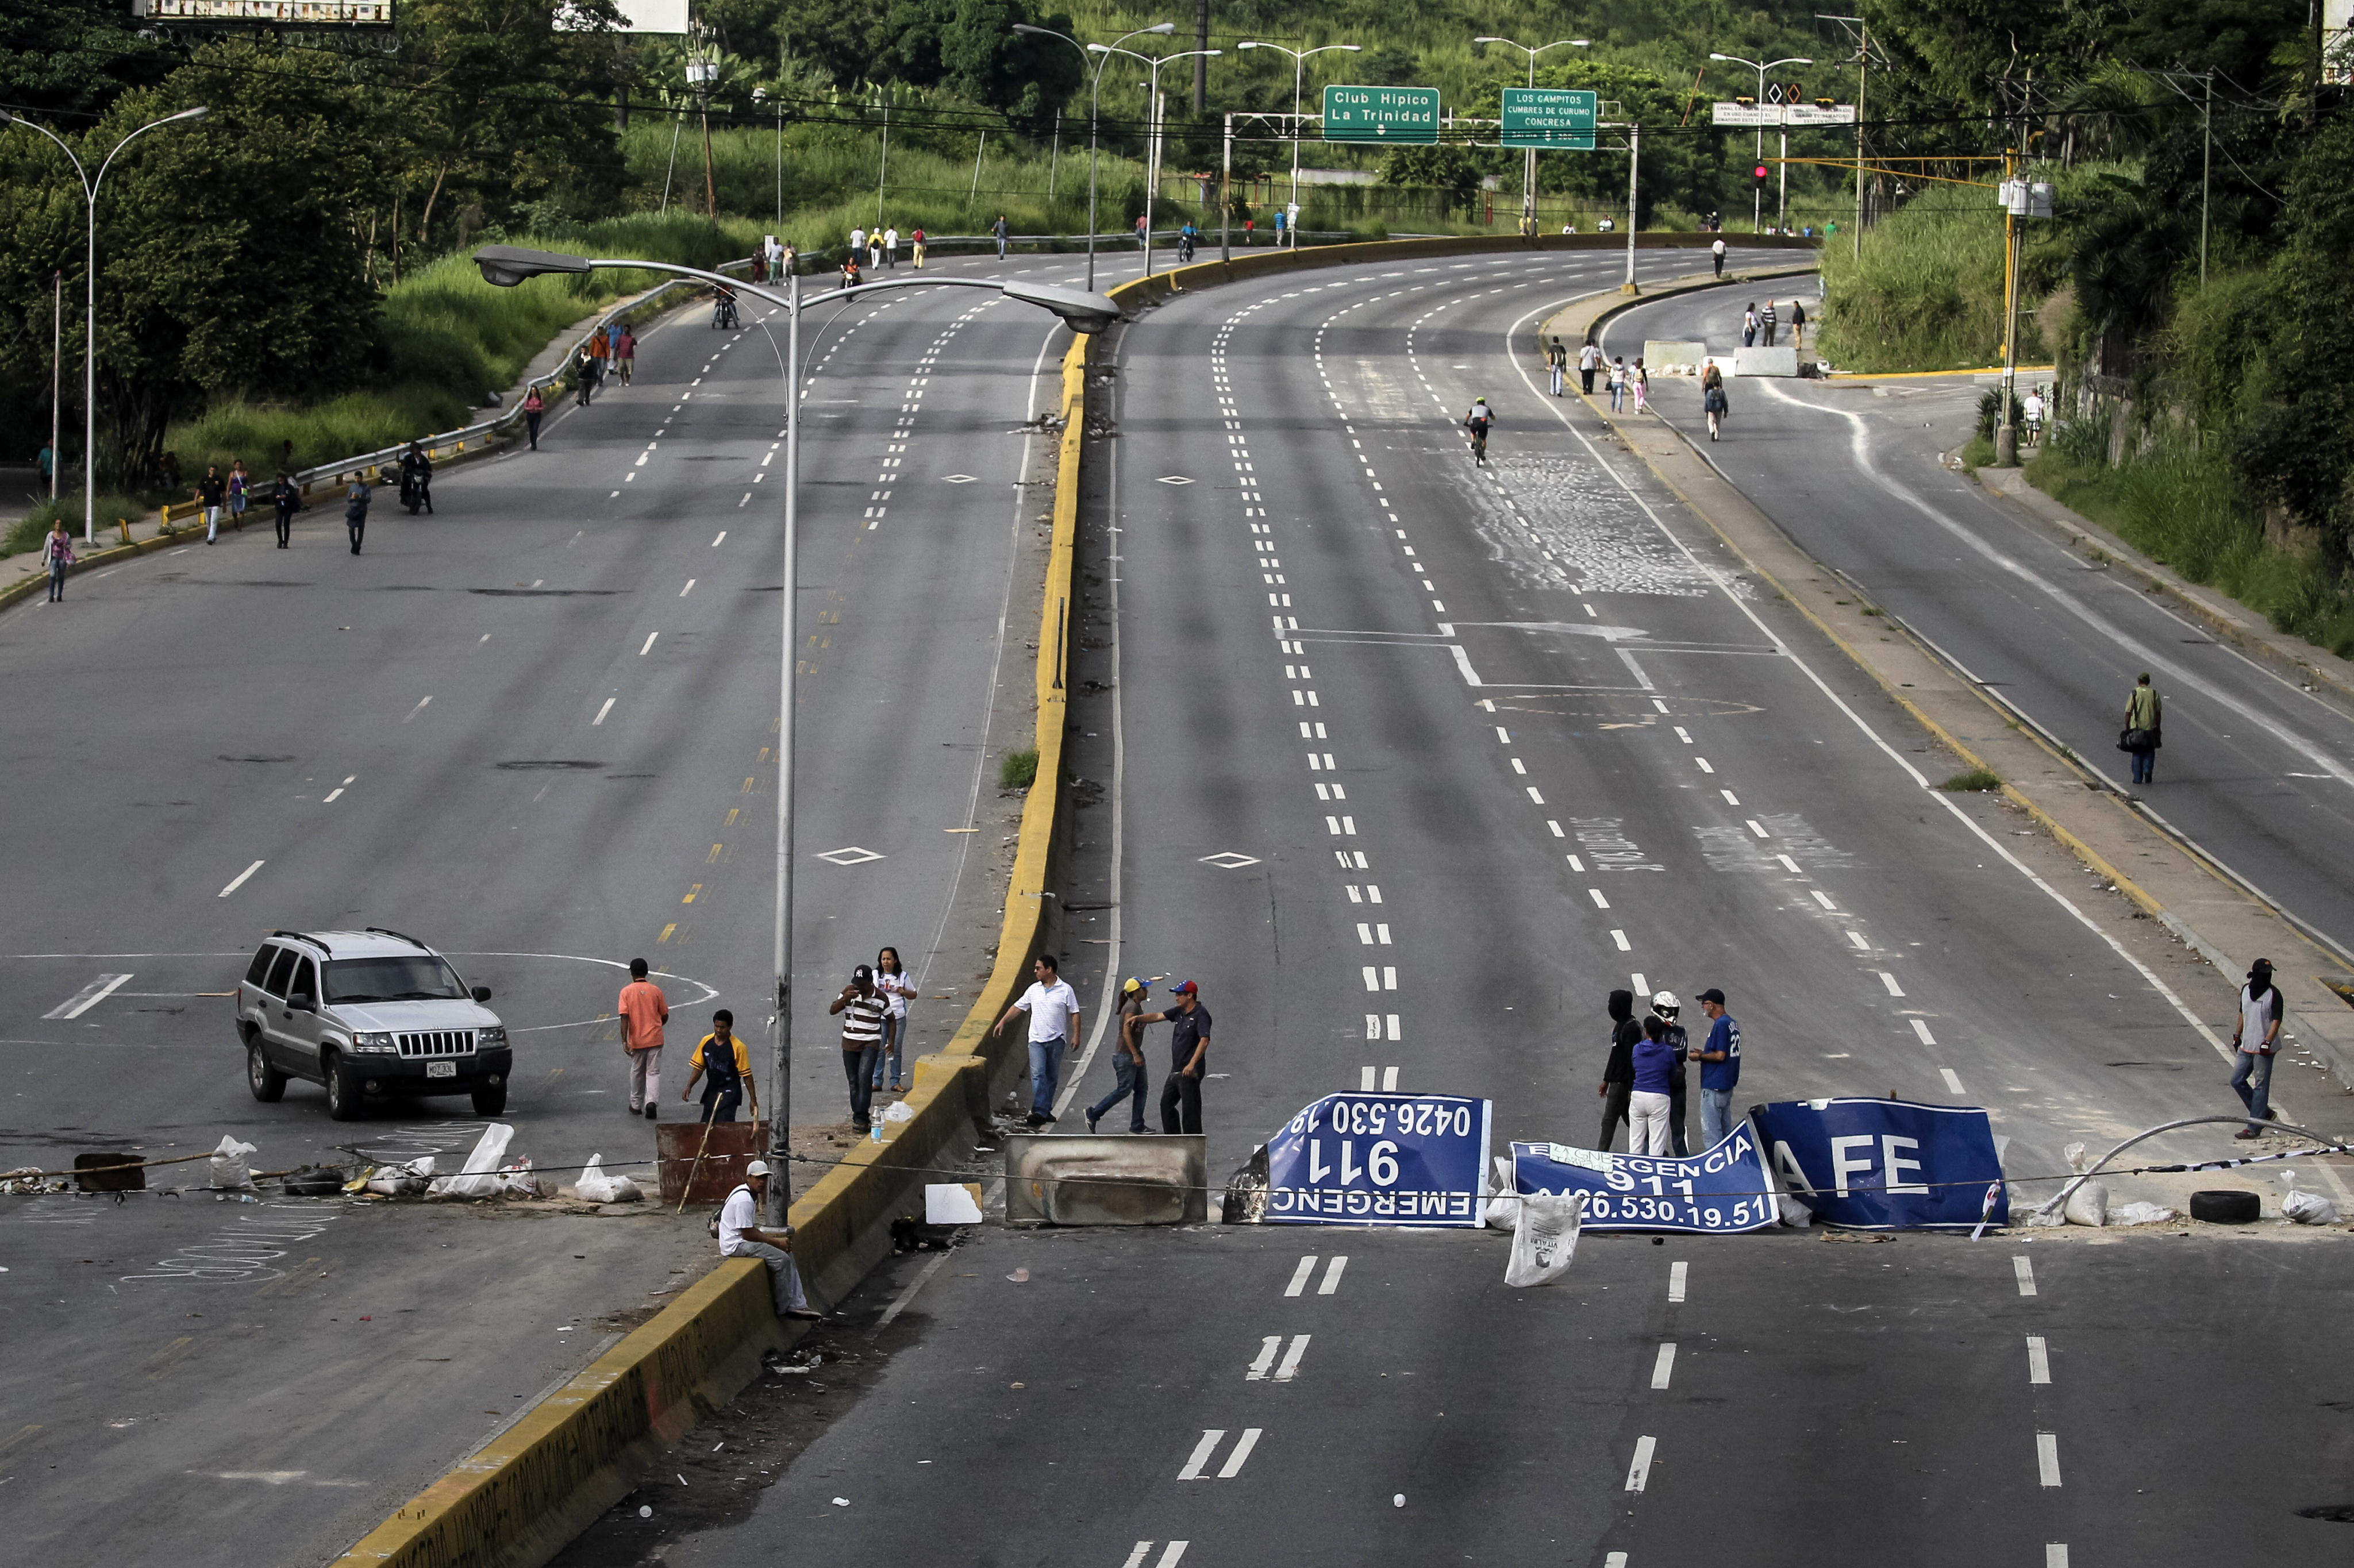 Continúa paro en Venezuela contra Maduro; primer día dejó 3 muertos